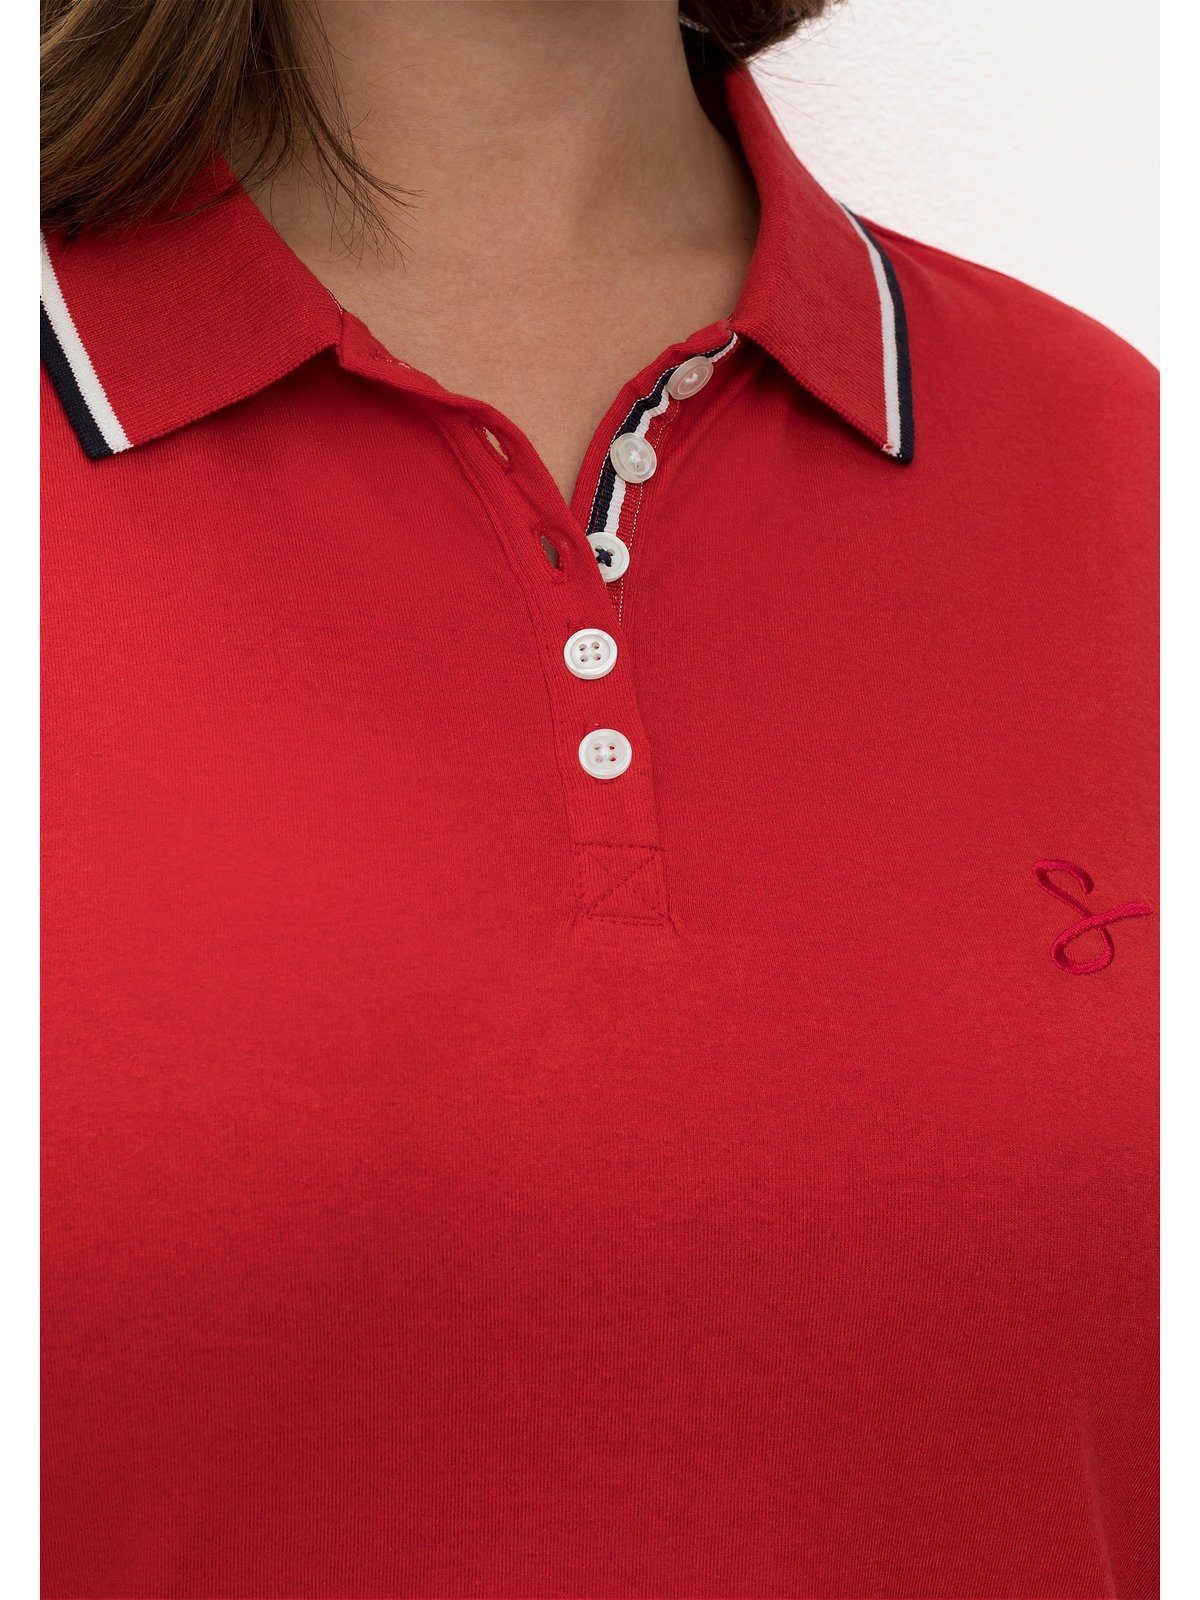 Sheego Polokragen 3/4-Arm-Shirt mit mohnrot Große Größen